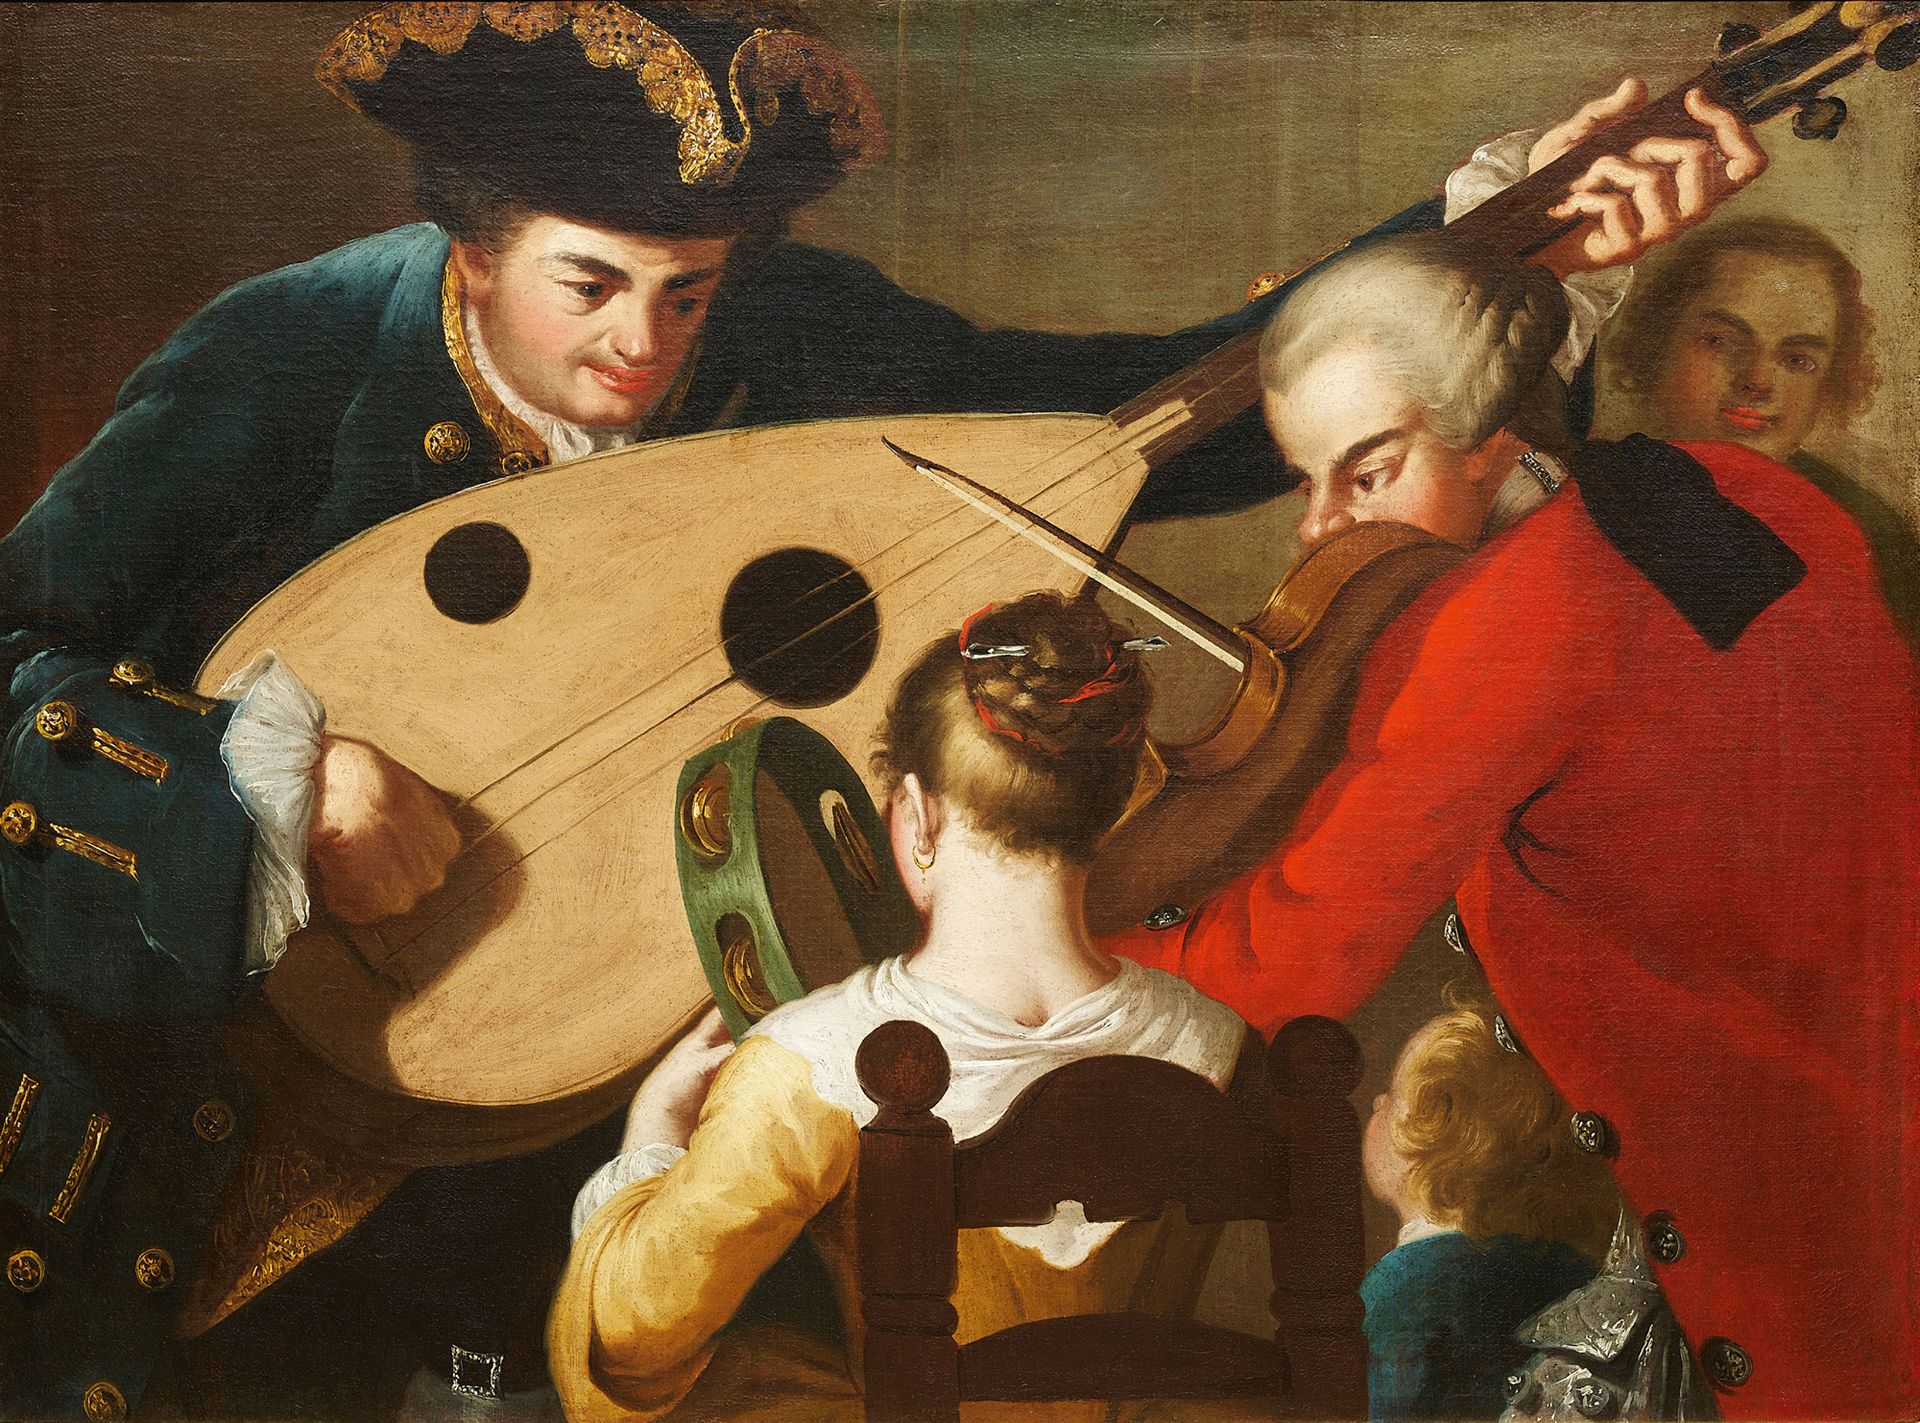 PIETRO FABRIS ACTIF À NAPLES ENTRE 1740-1792 音乐会
布面油画
76 x 101.5厘米

出处 
前Rocco P&hellip;